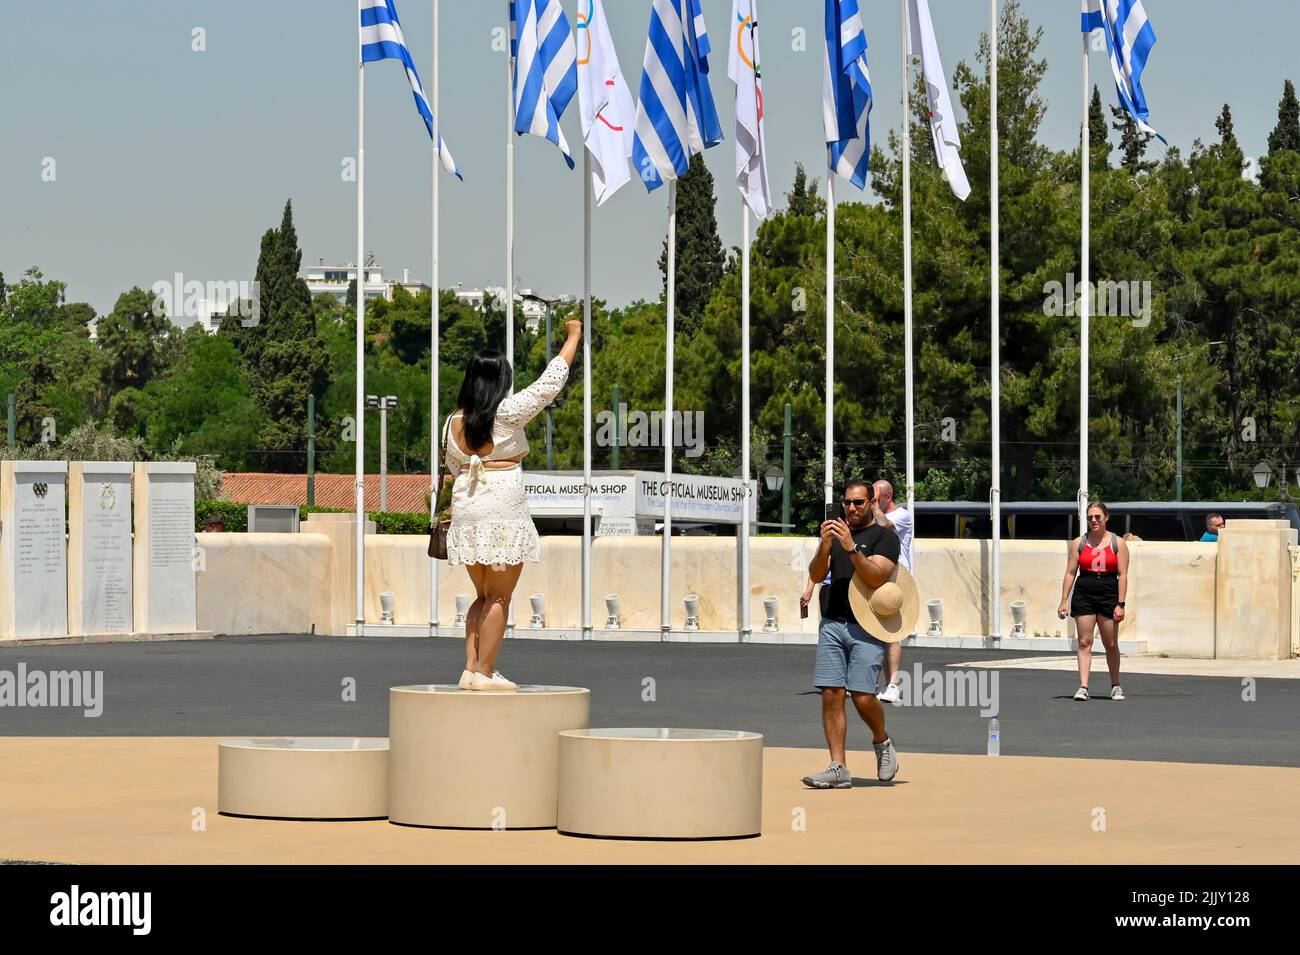 Atenas, Grecia - 2022 de mayo: Persona de pie en un podio en el histórico estatium olímpico de la ciudad posando para una fotografía. Foto de stock